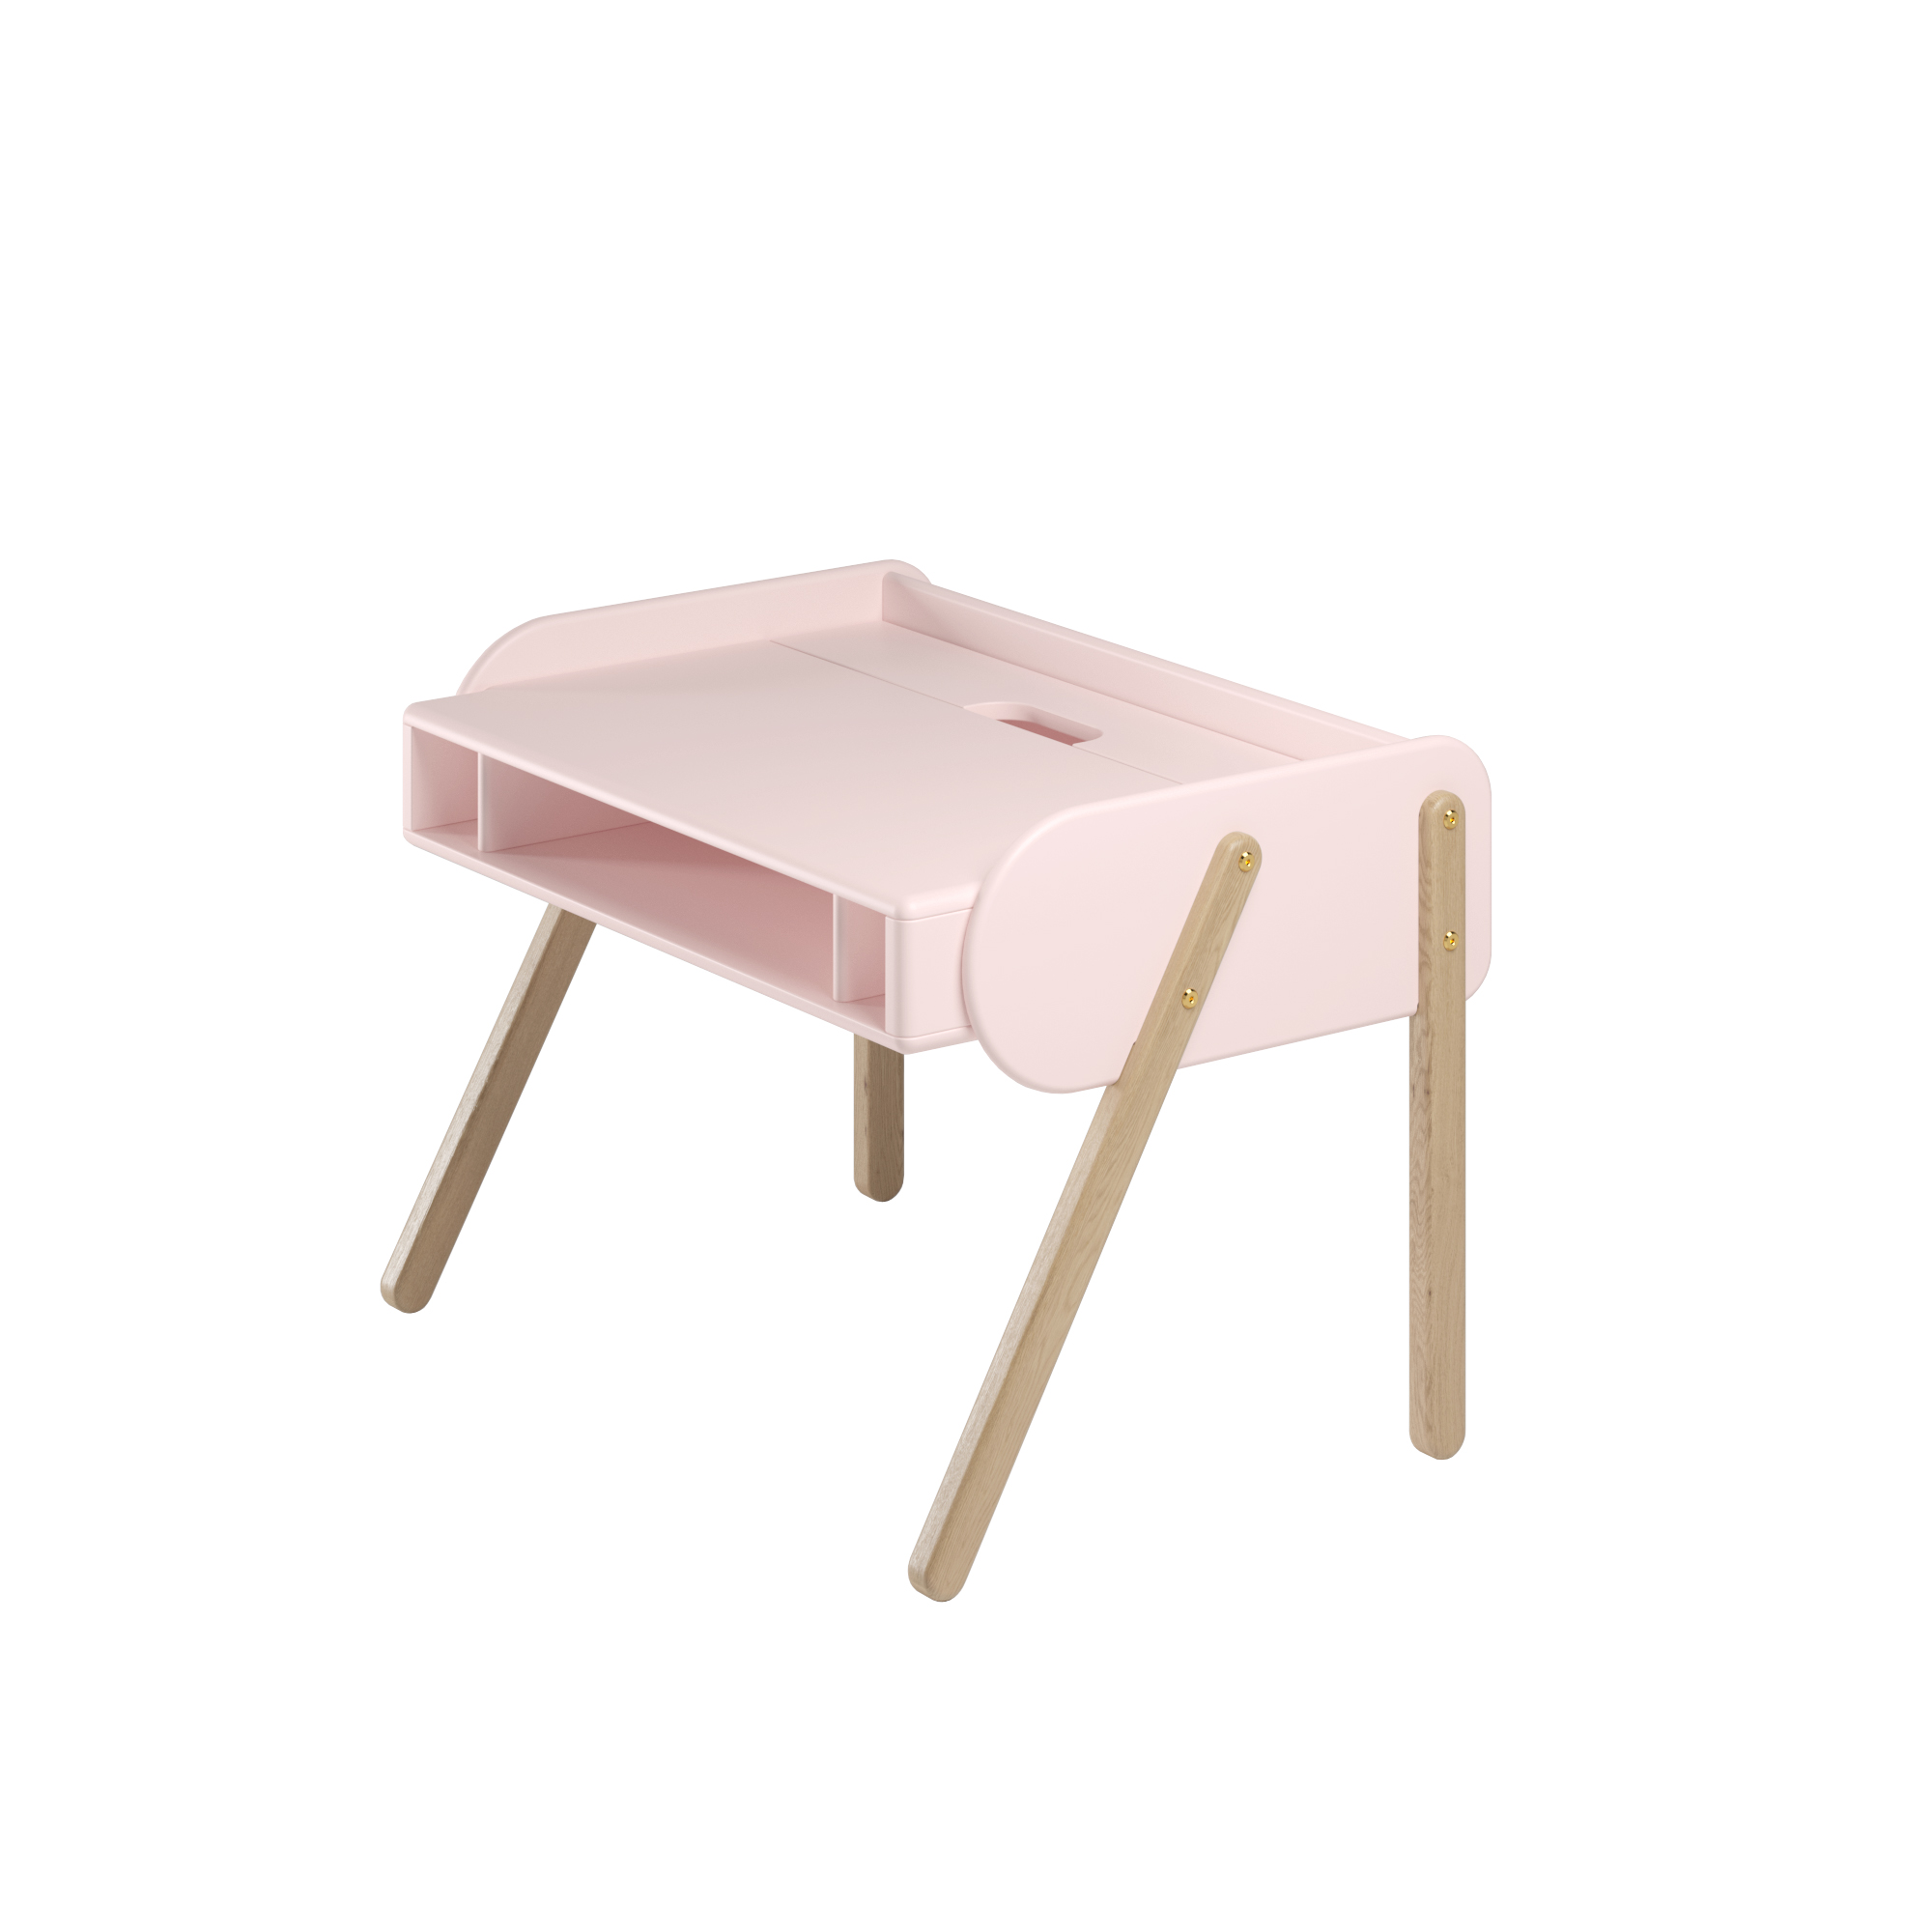 Растущий детский стол Baby Chipak "Пудра", розовый, S